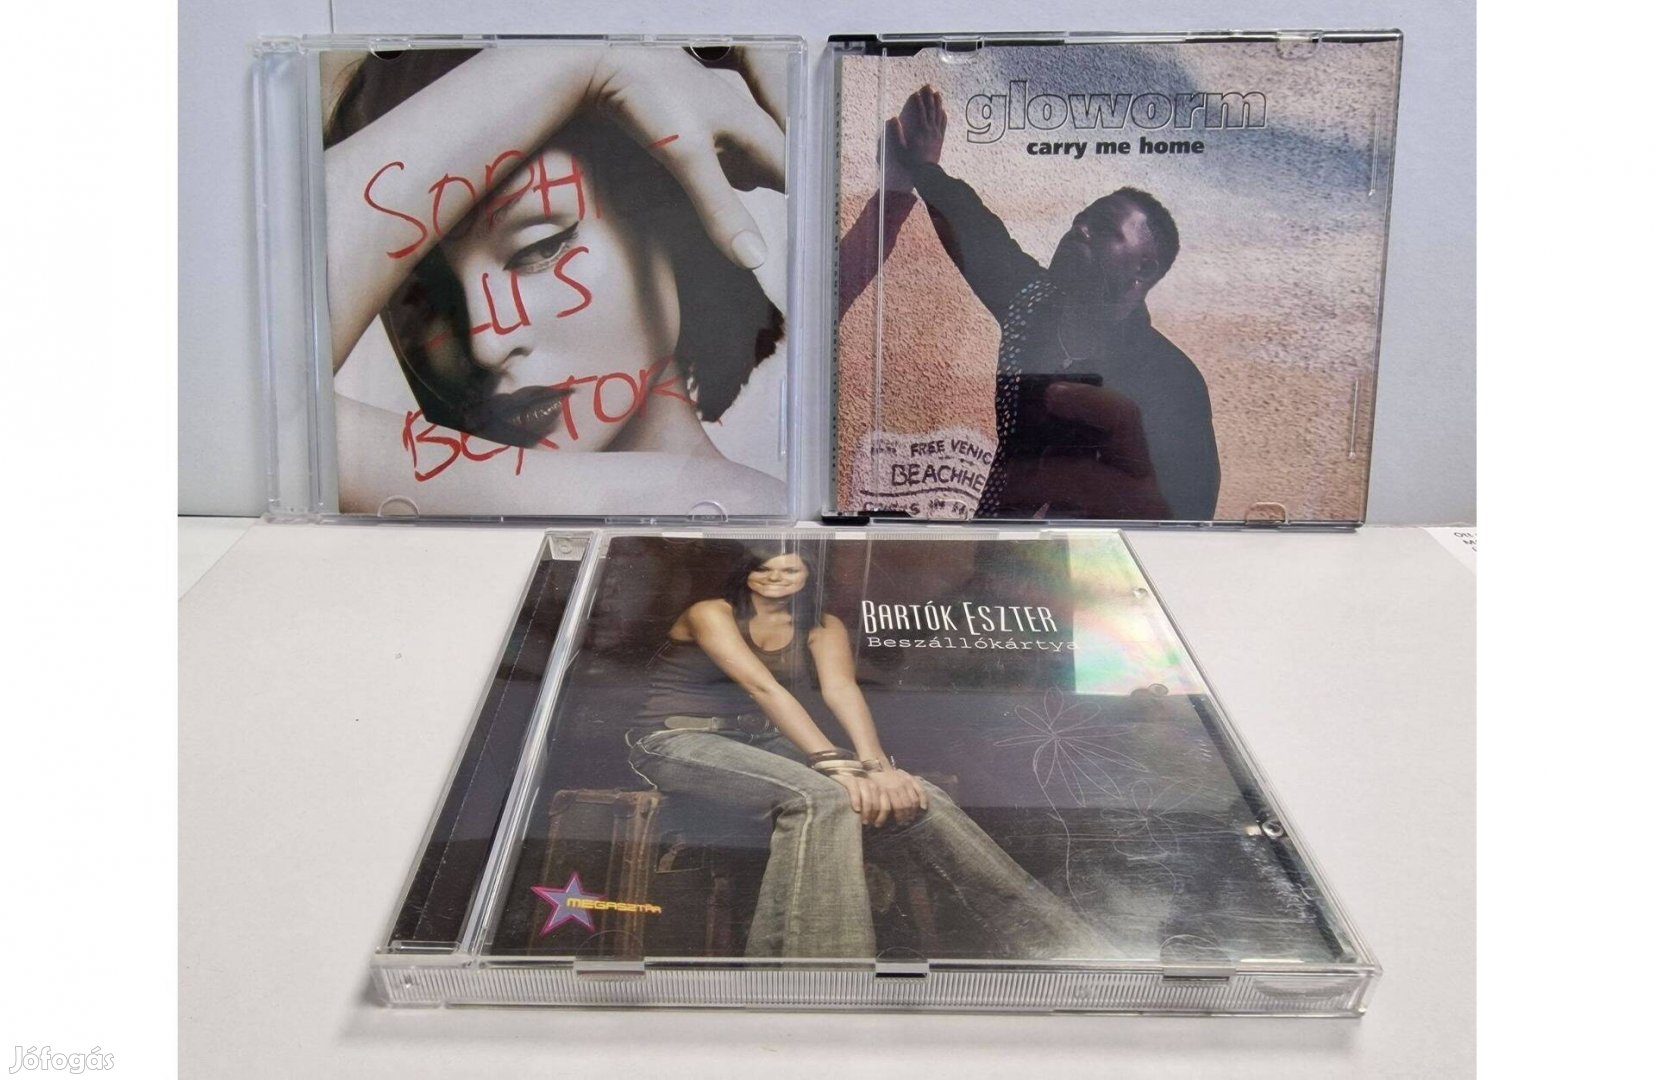 Zenei eredeti, karcmentes CD-k eladók 1.500 Ft/db áron